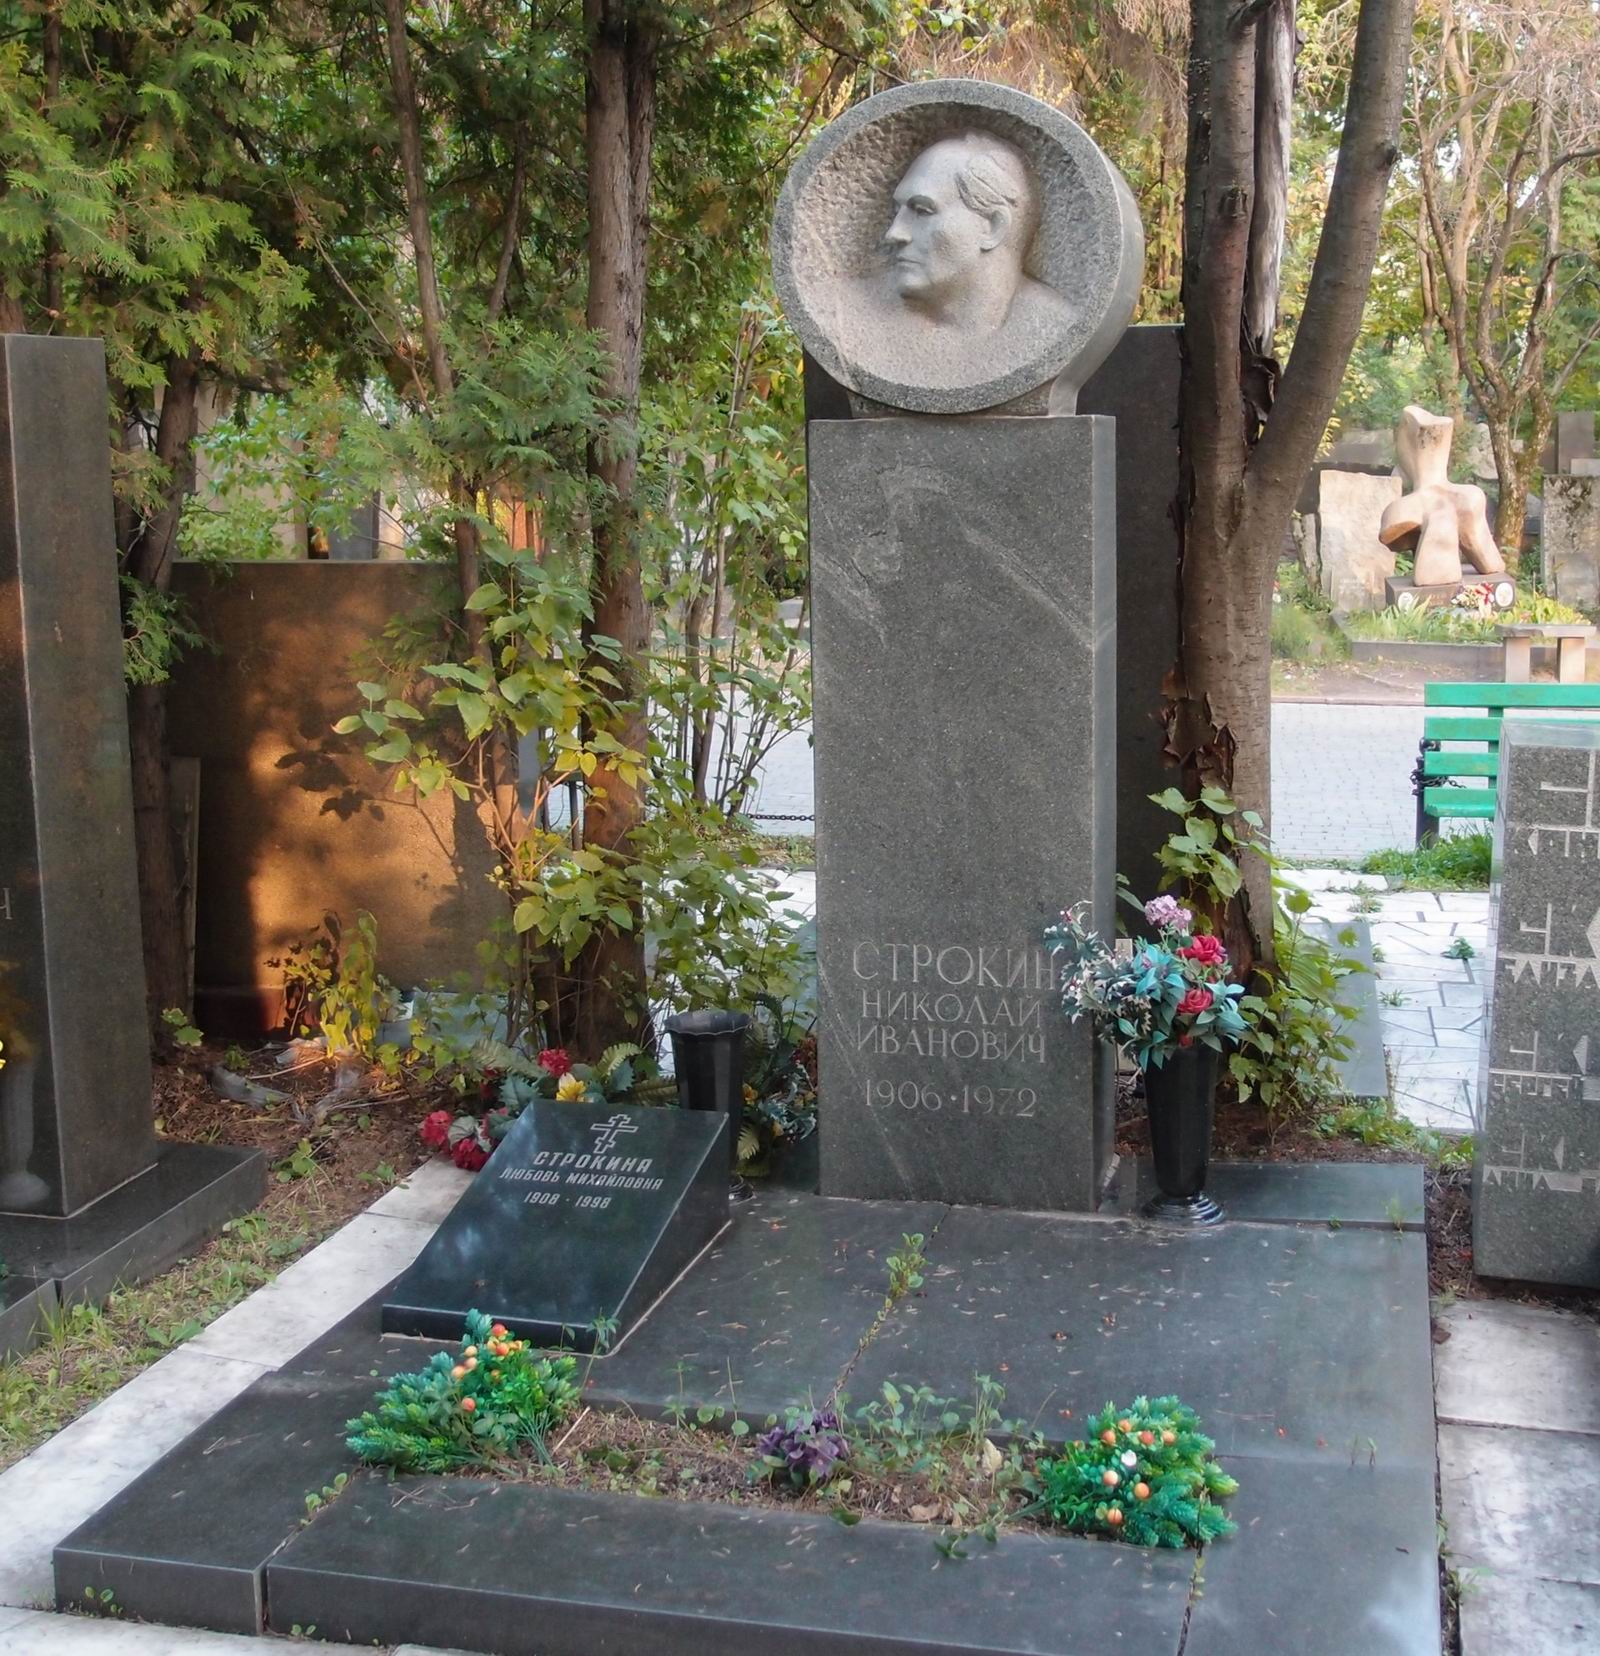 Памятник на могиле Строкина Н.И. (1906–1972), ск. Н.Никогосян, арх. Т.Никогосян, на Новодевичьем кладбище (7–2–18).